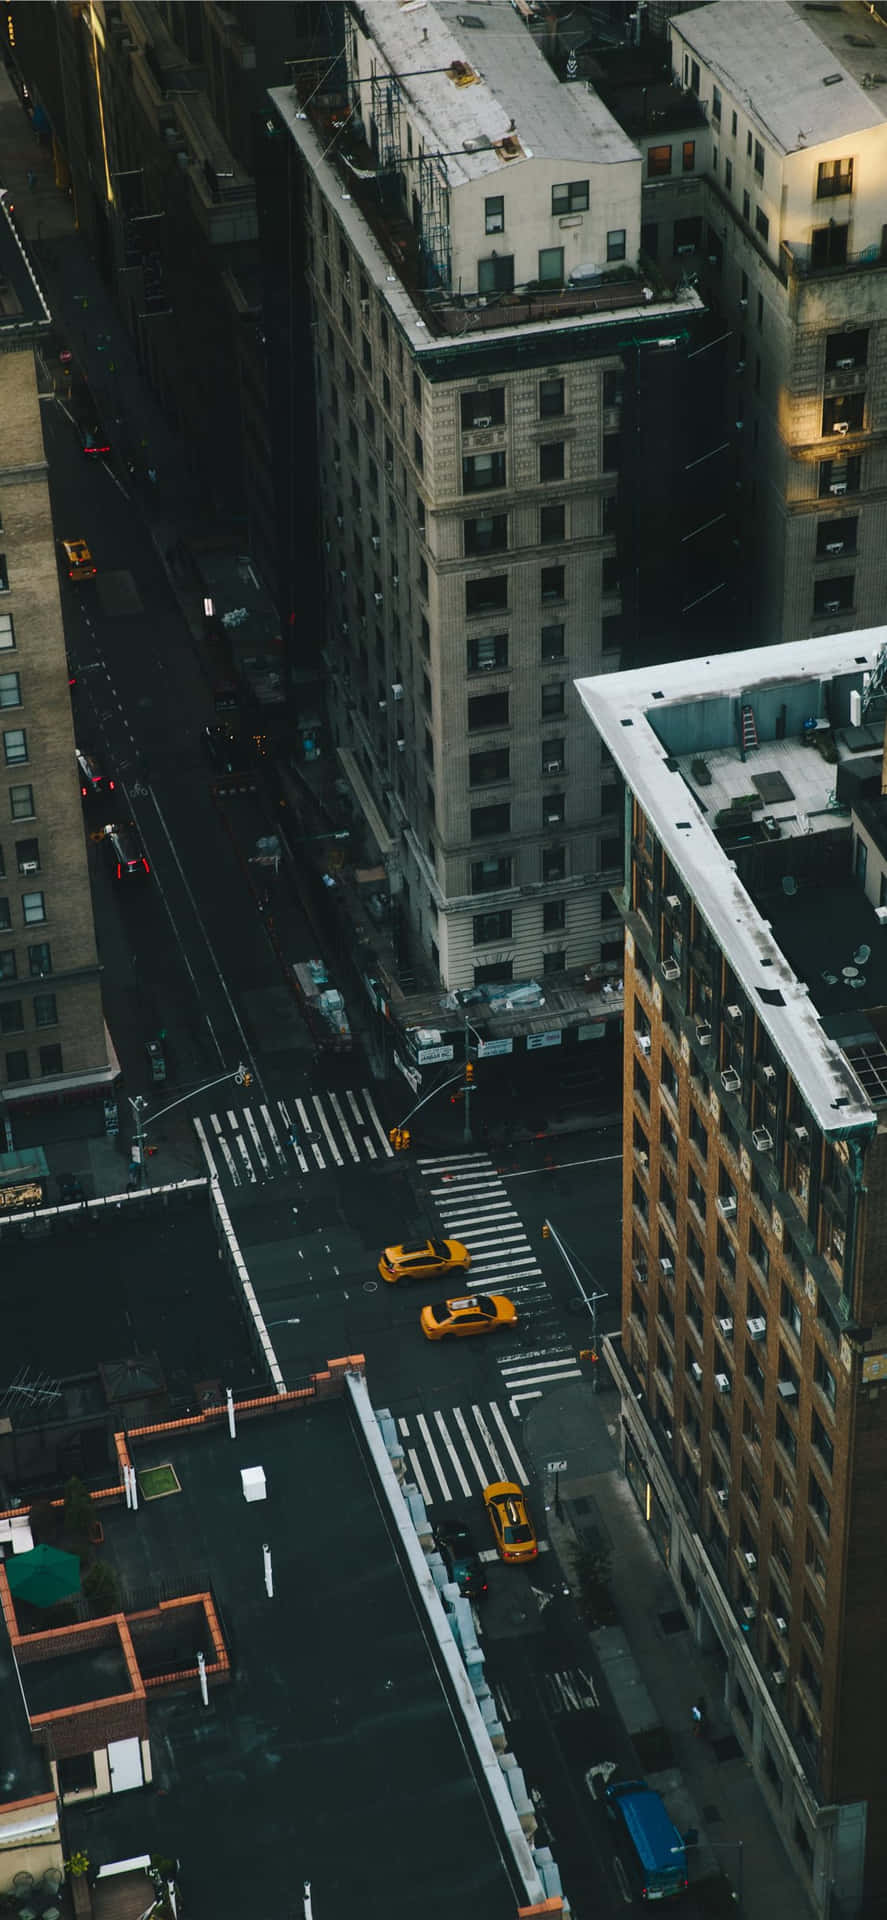 Fundode Tela Do Iphone X Com A Cena De Uma Rua De Táxi Na Cidade De Nova York.